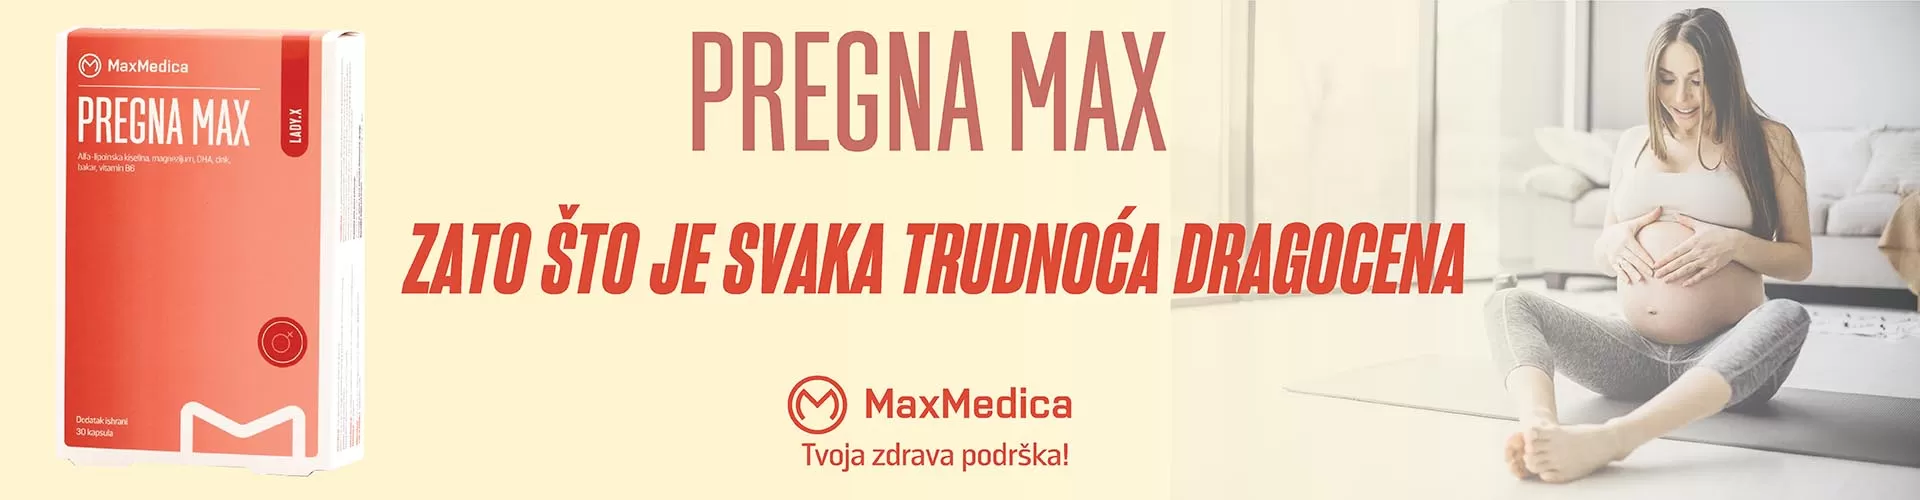 Max medica